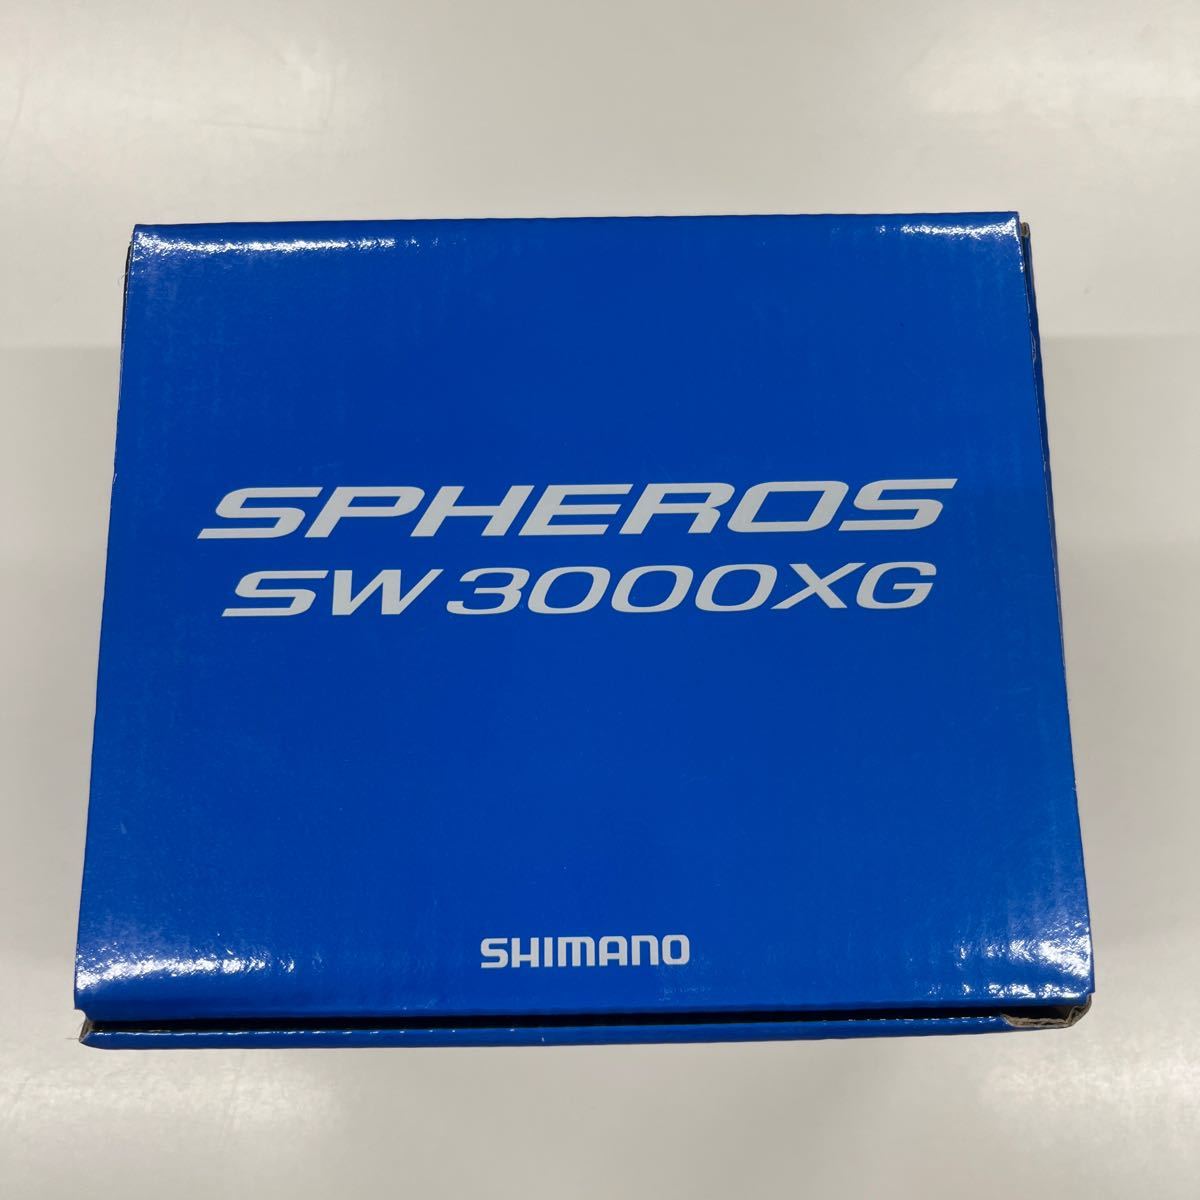 19 スフェロス SW 3000XG SPHEROS SHIMANO リール シマノリール シマノ スピニングリール